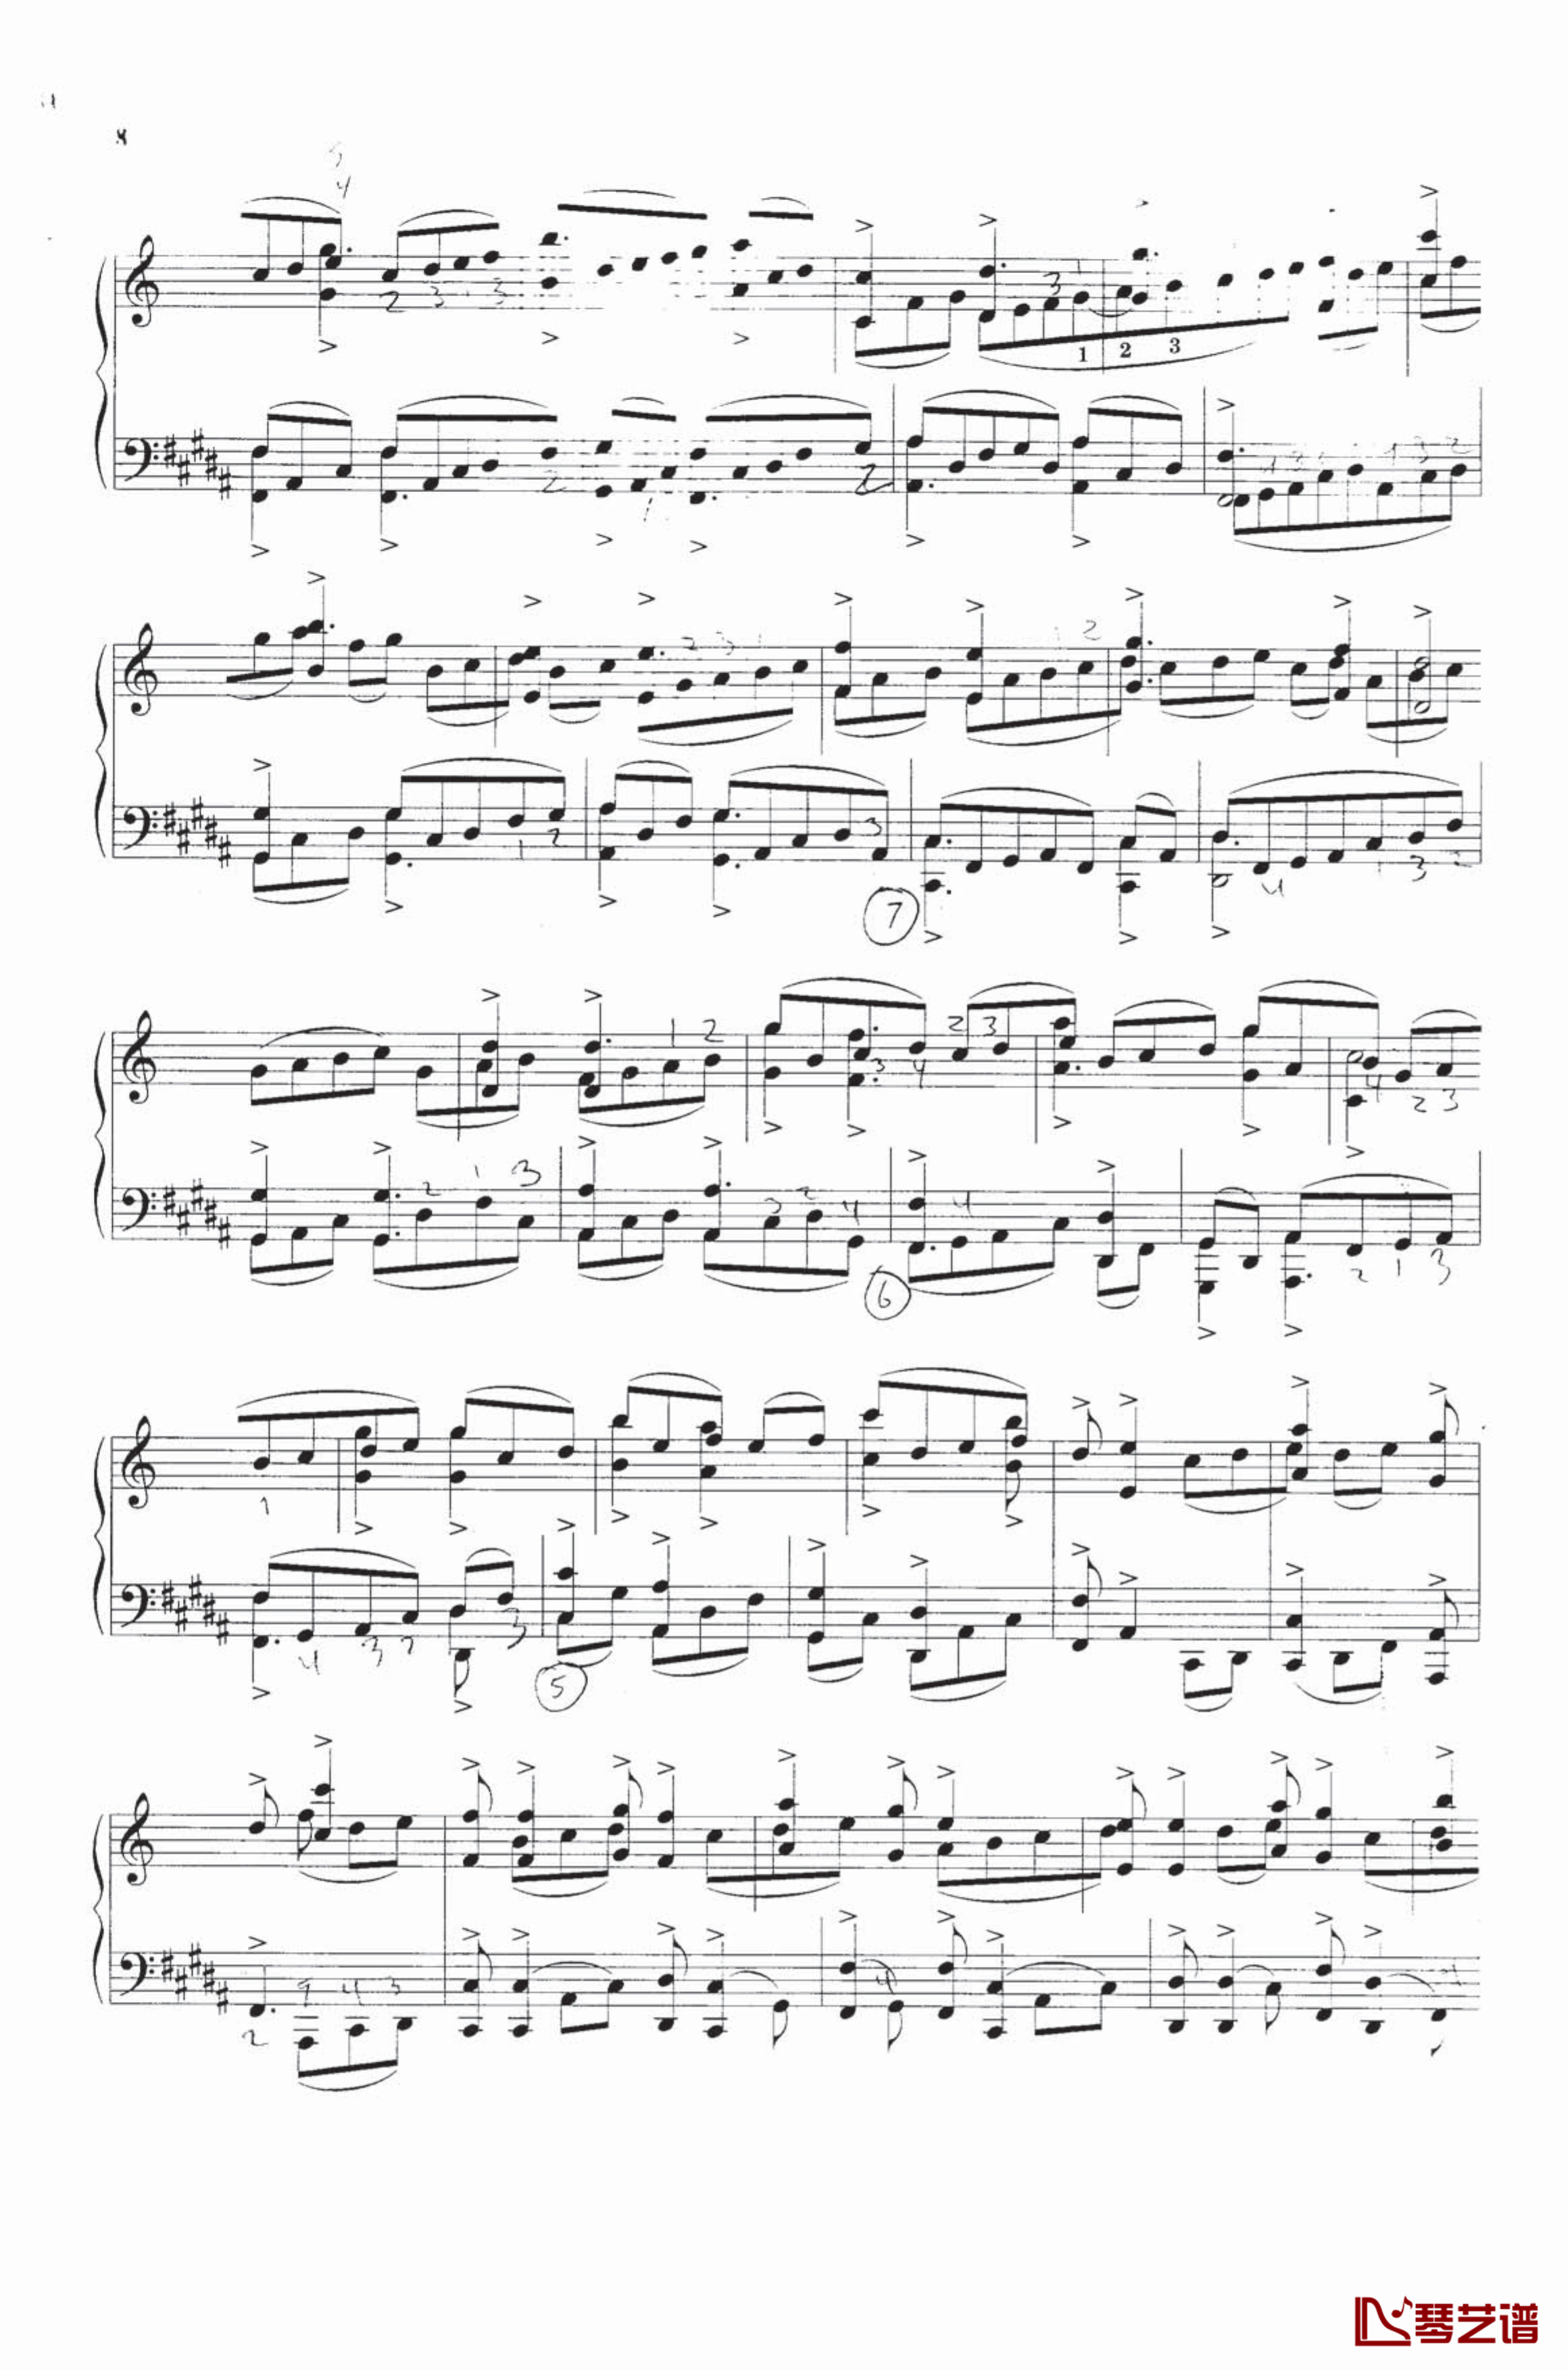 钢琴练习曲NO.1钢琴谱-里盖蒂3